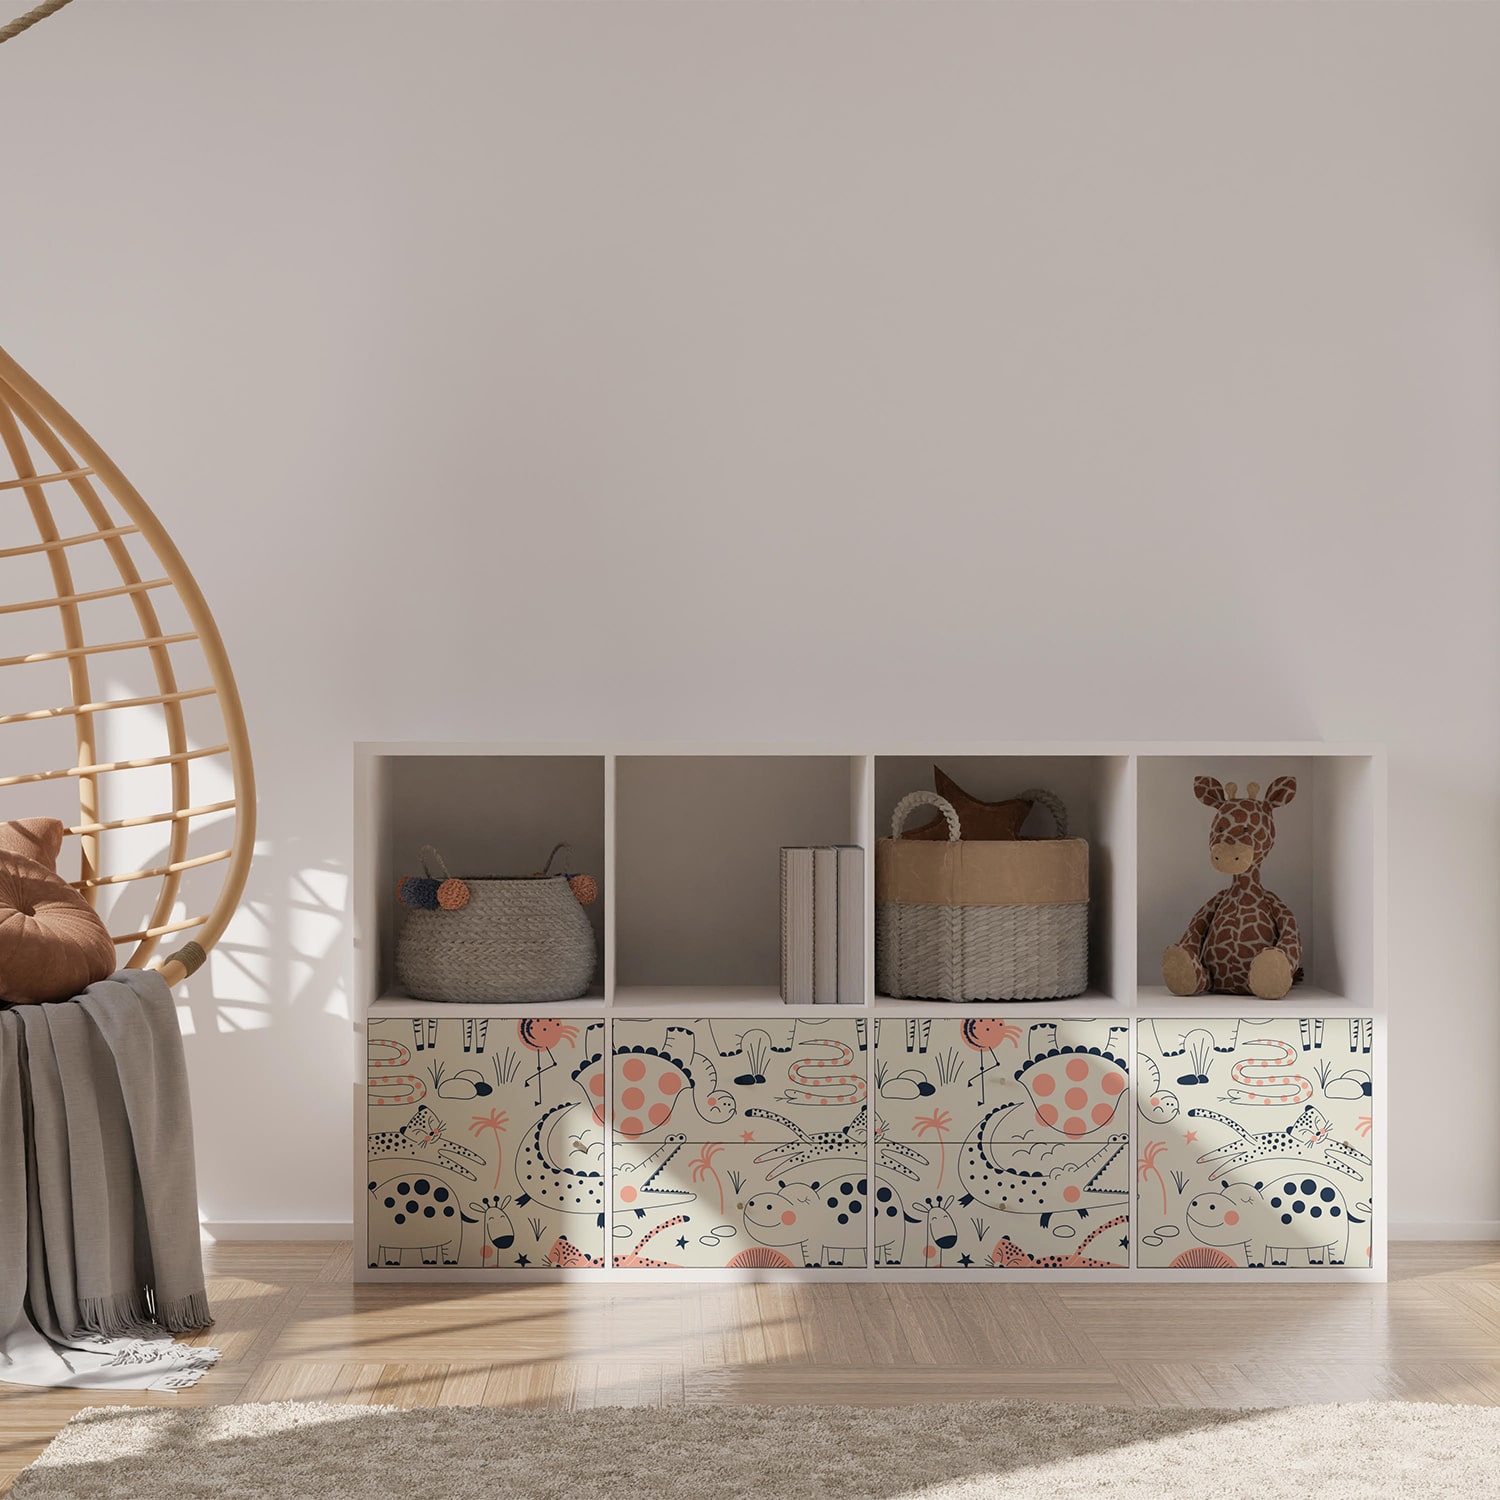 PP77-meuble-papier-peint-adhesif-decoratif-revetement-vinyle-motifs-animaux-renovation-meuble-mur-min